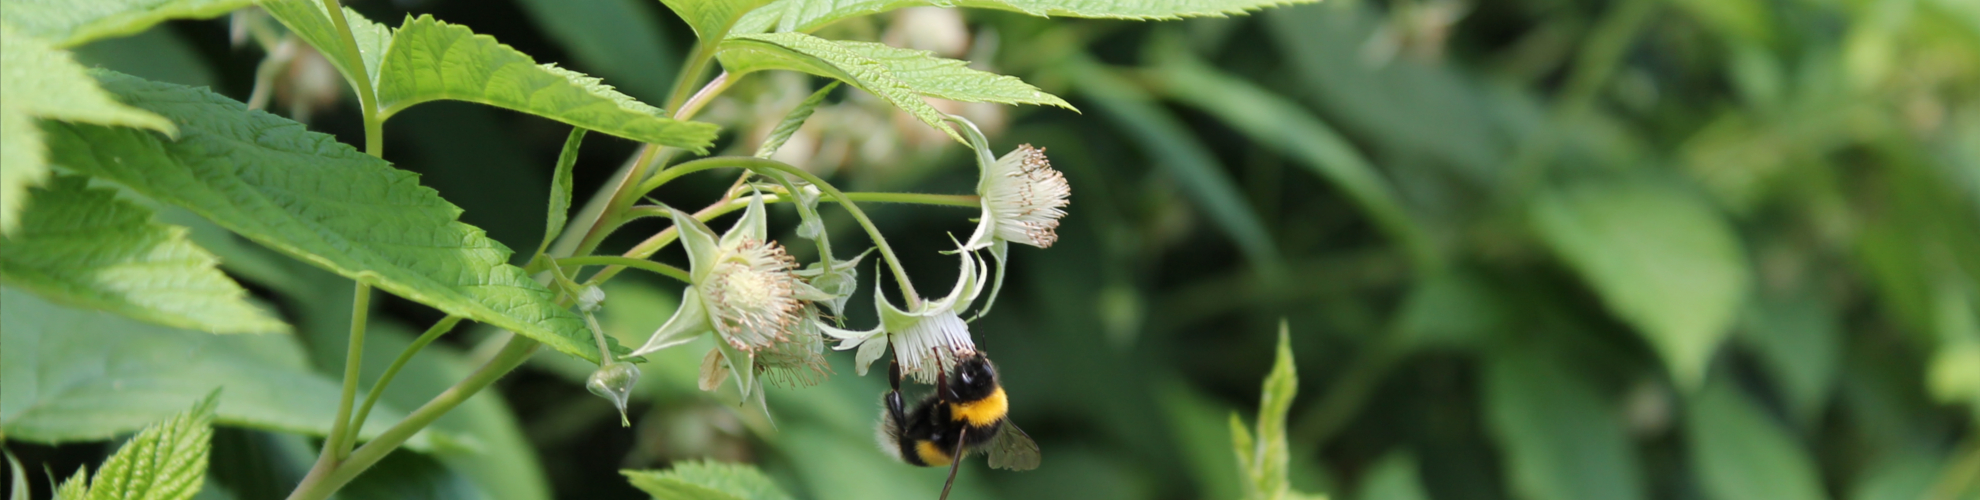 Nachhaltigkeit - Biene sitzt auf einer Himbeerpflanze